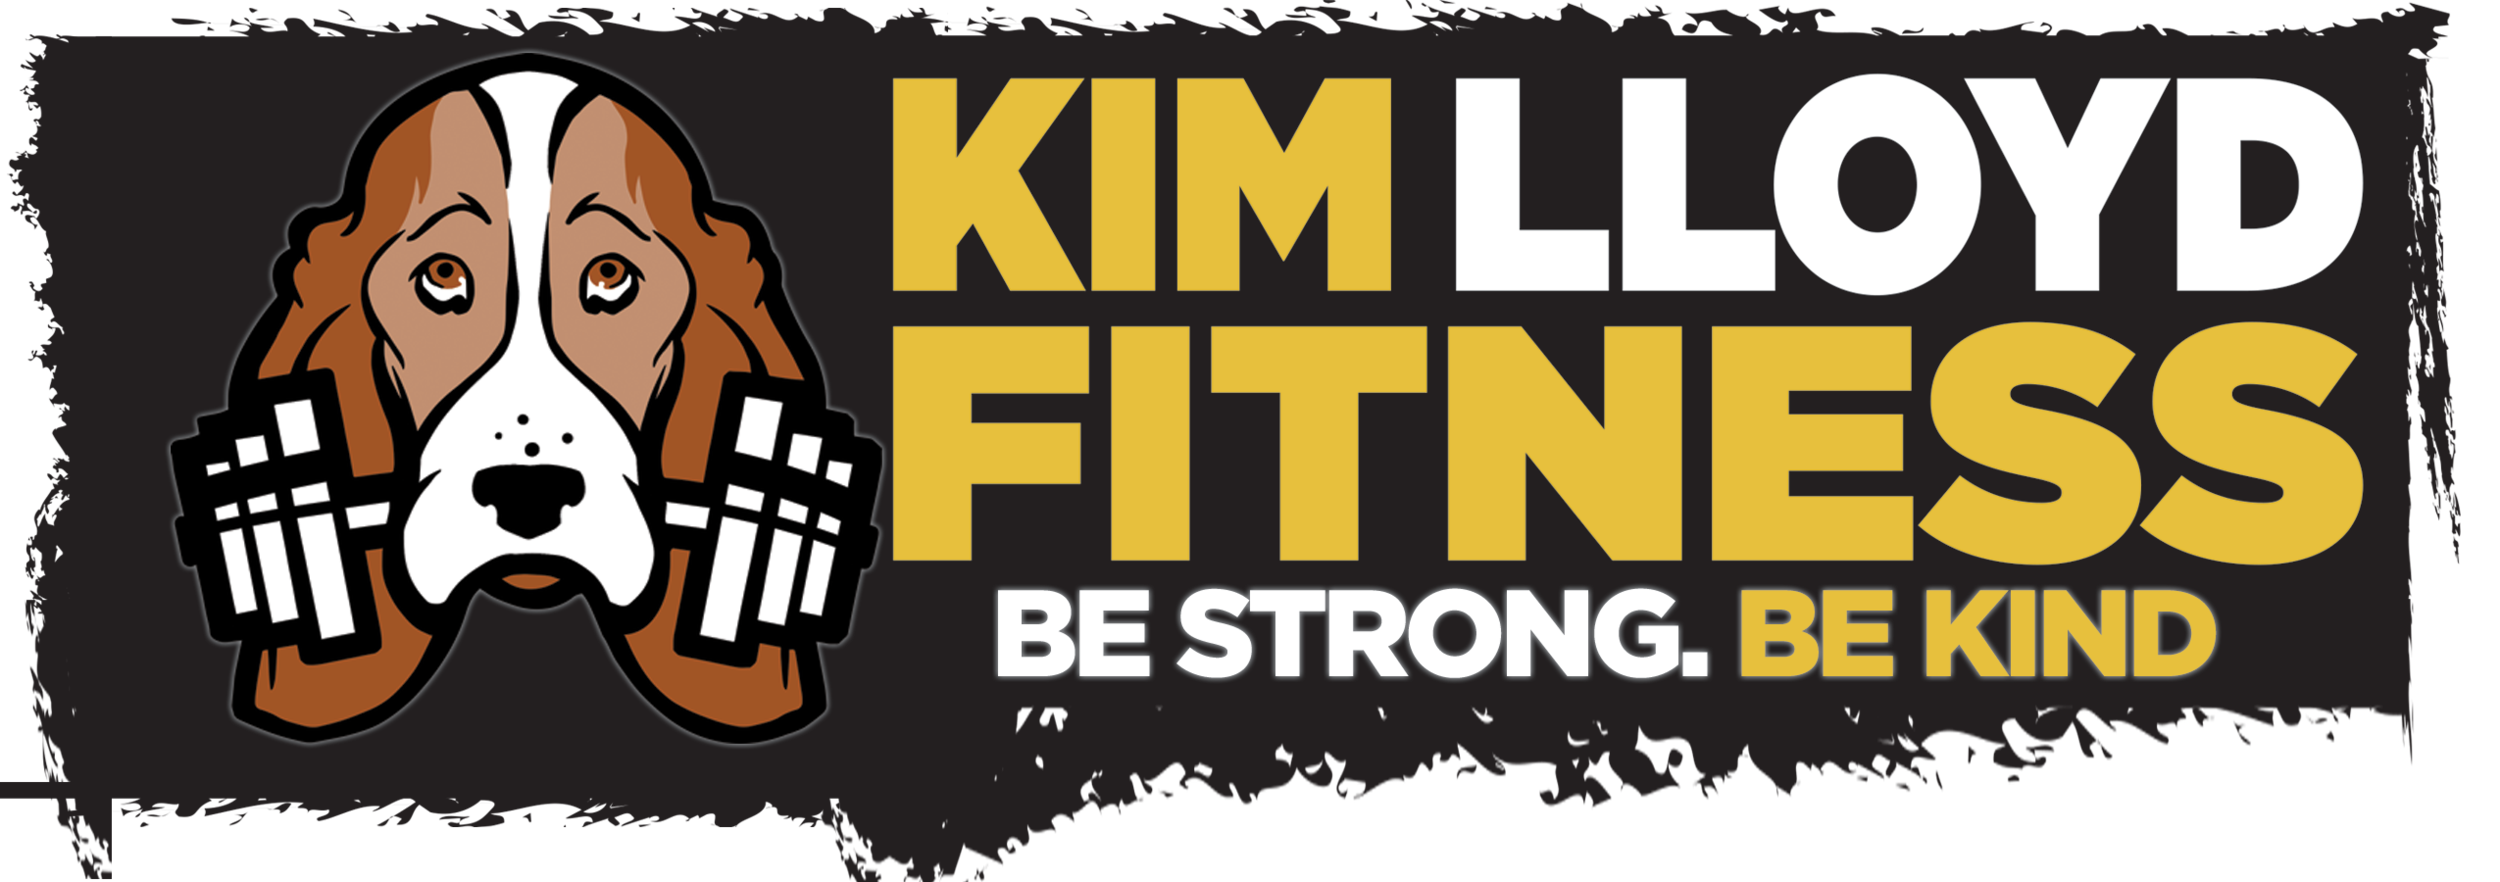 Kim Lloyd Fitness